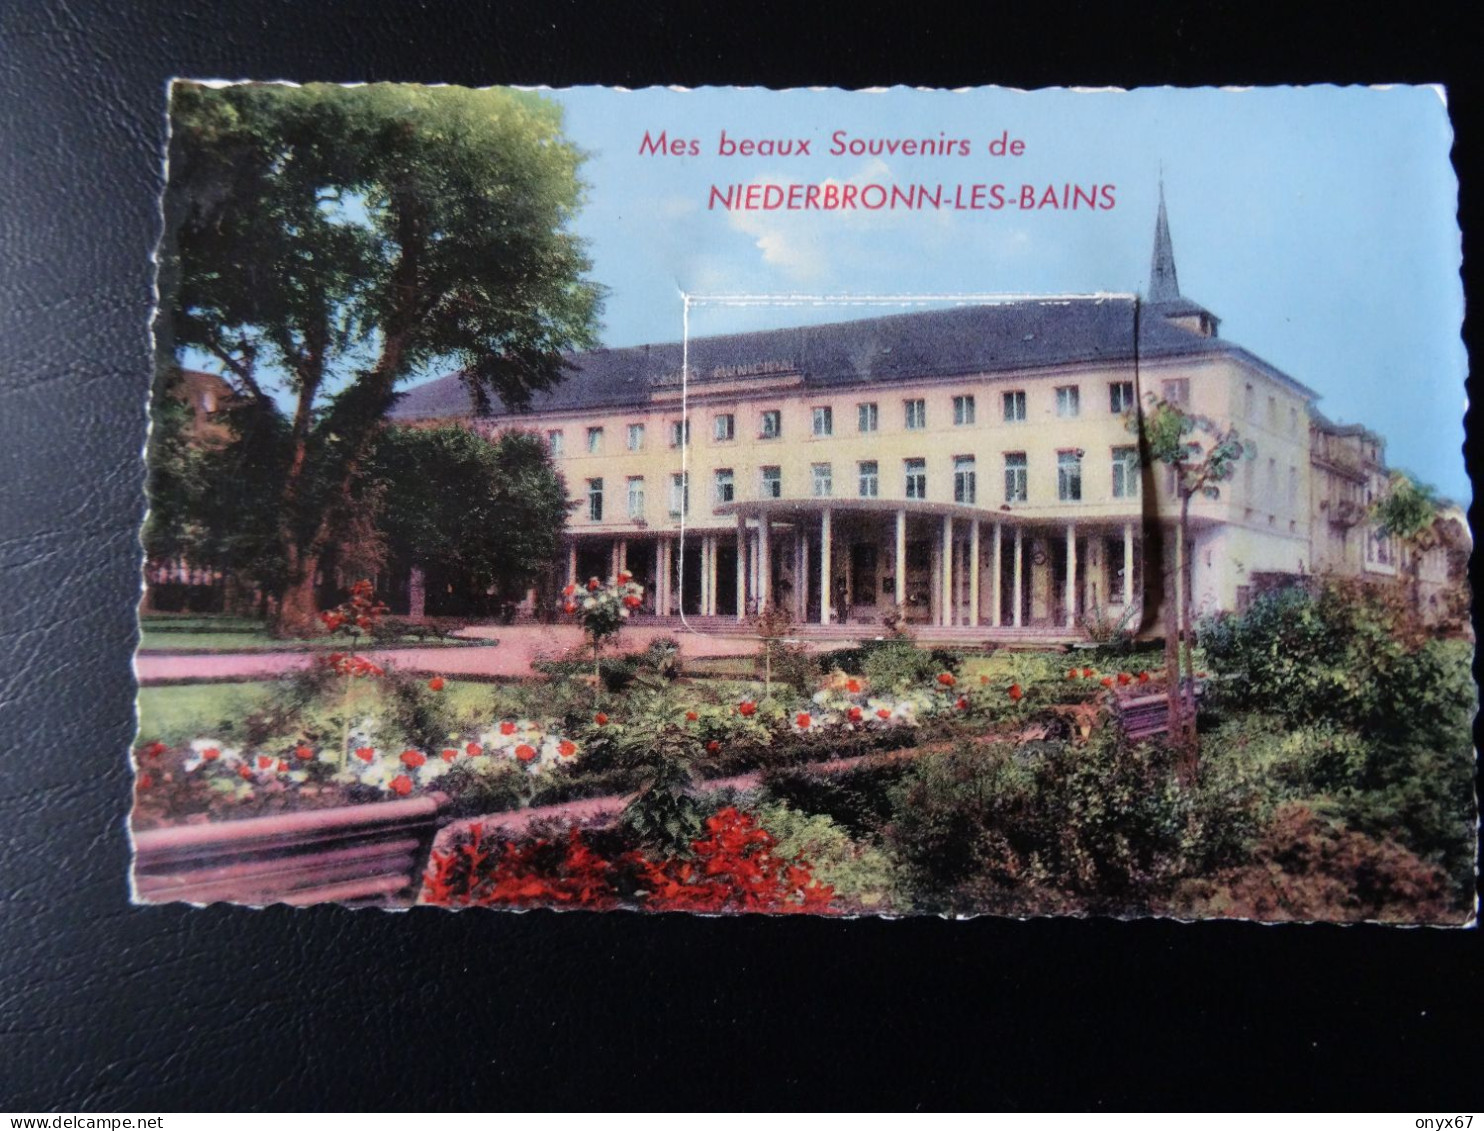 Carte Postale Fantaisie Système NIEDERBRONN-Les-Bains-67-Bas-Rhin-Beaux Souvenir-Tirette 10 Vues - Niederbronn Les Bains